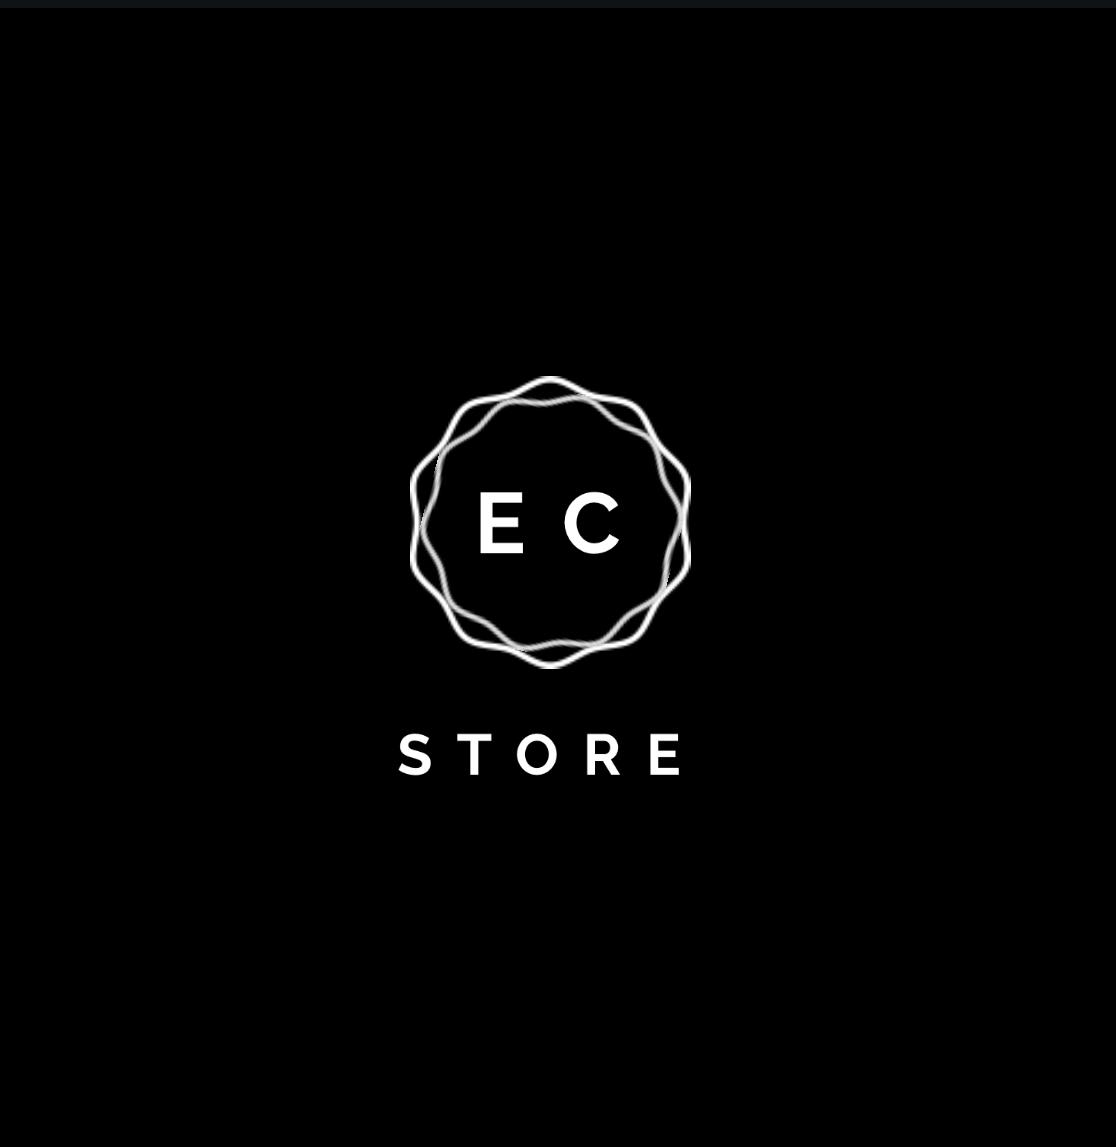 EC Store